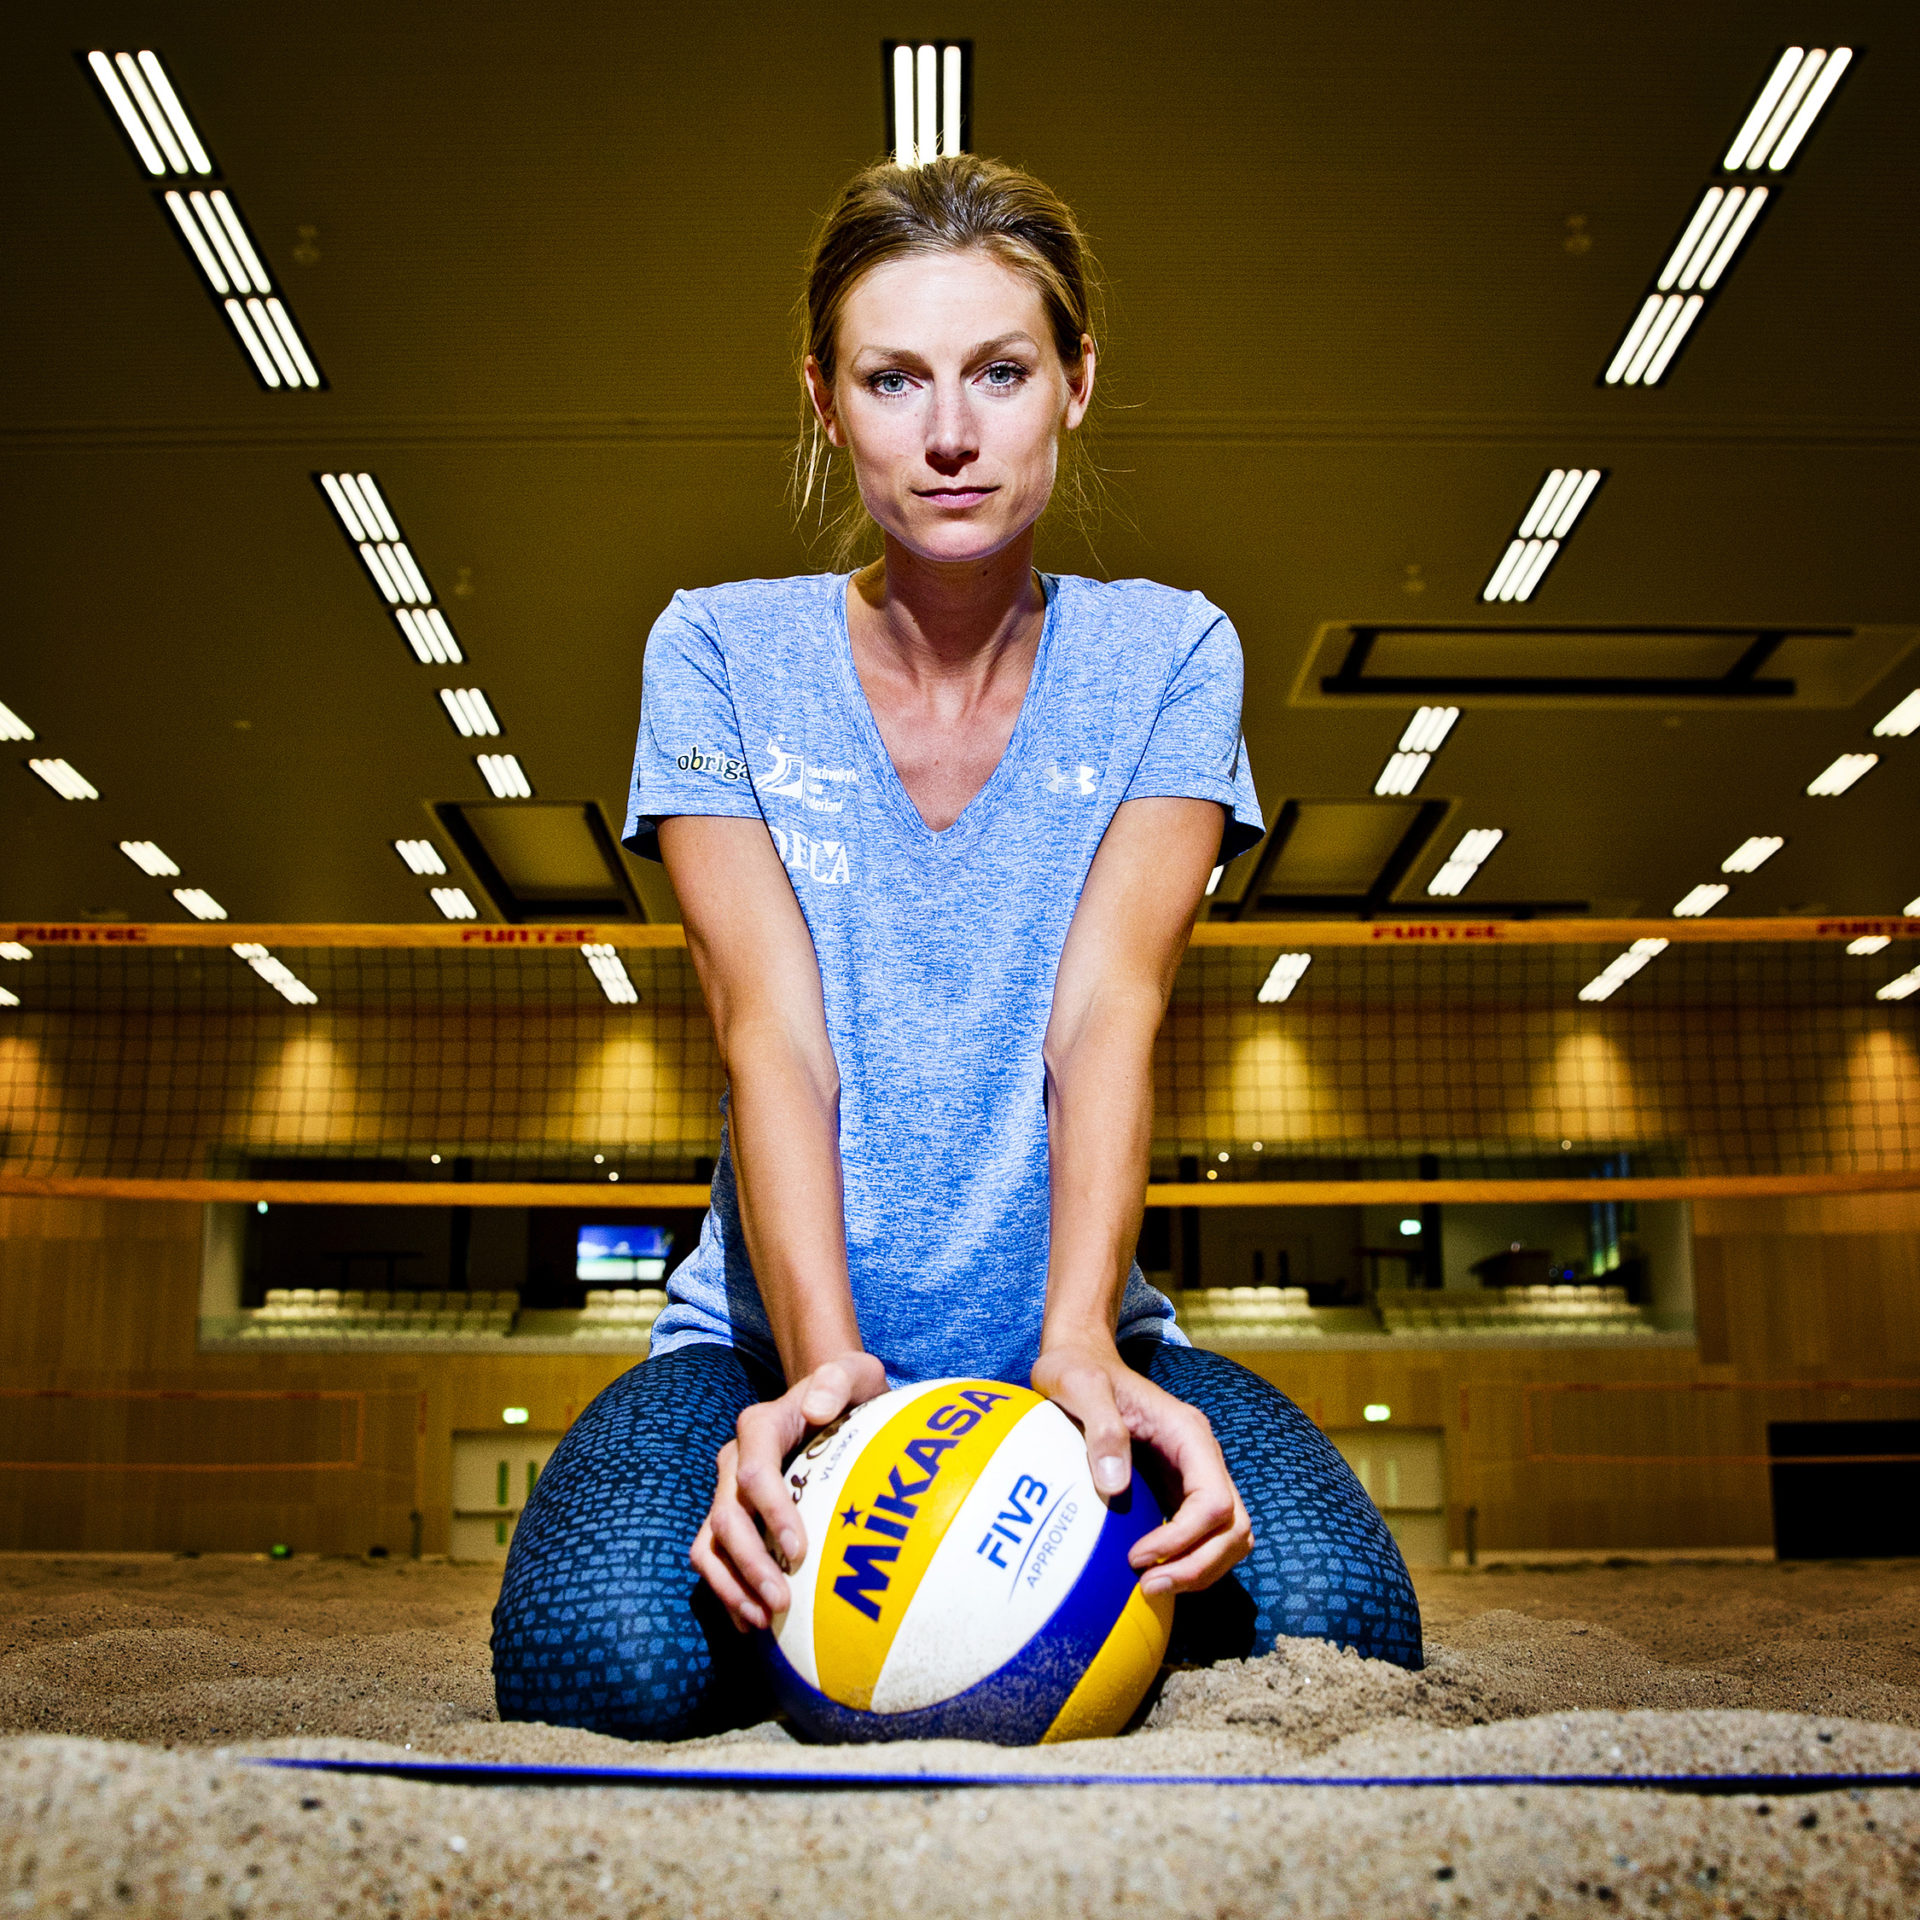 Beachvolleyballer en voormalig volleybalster Manon Flier